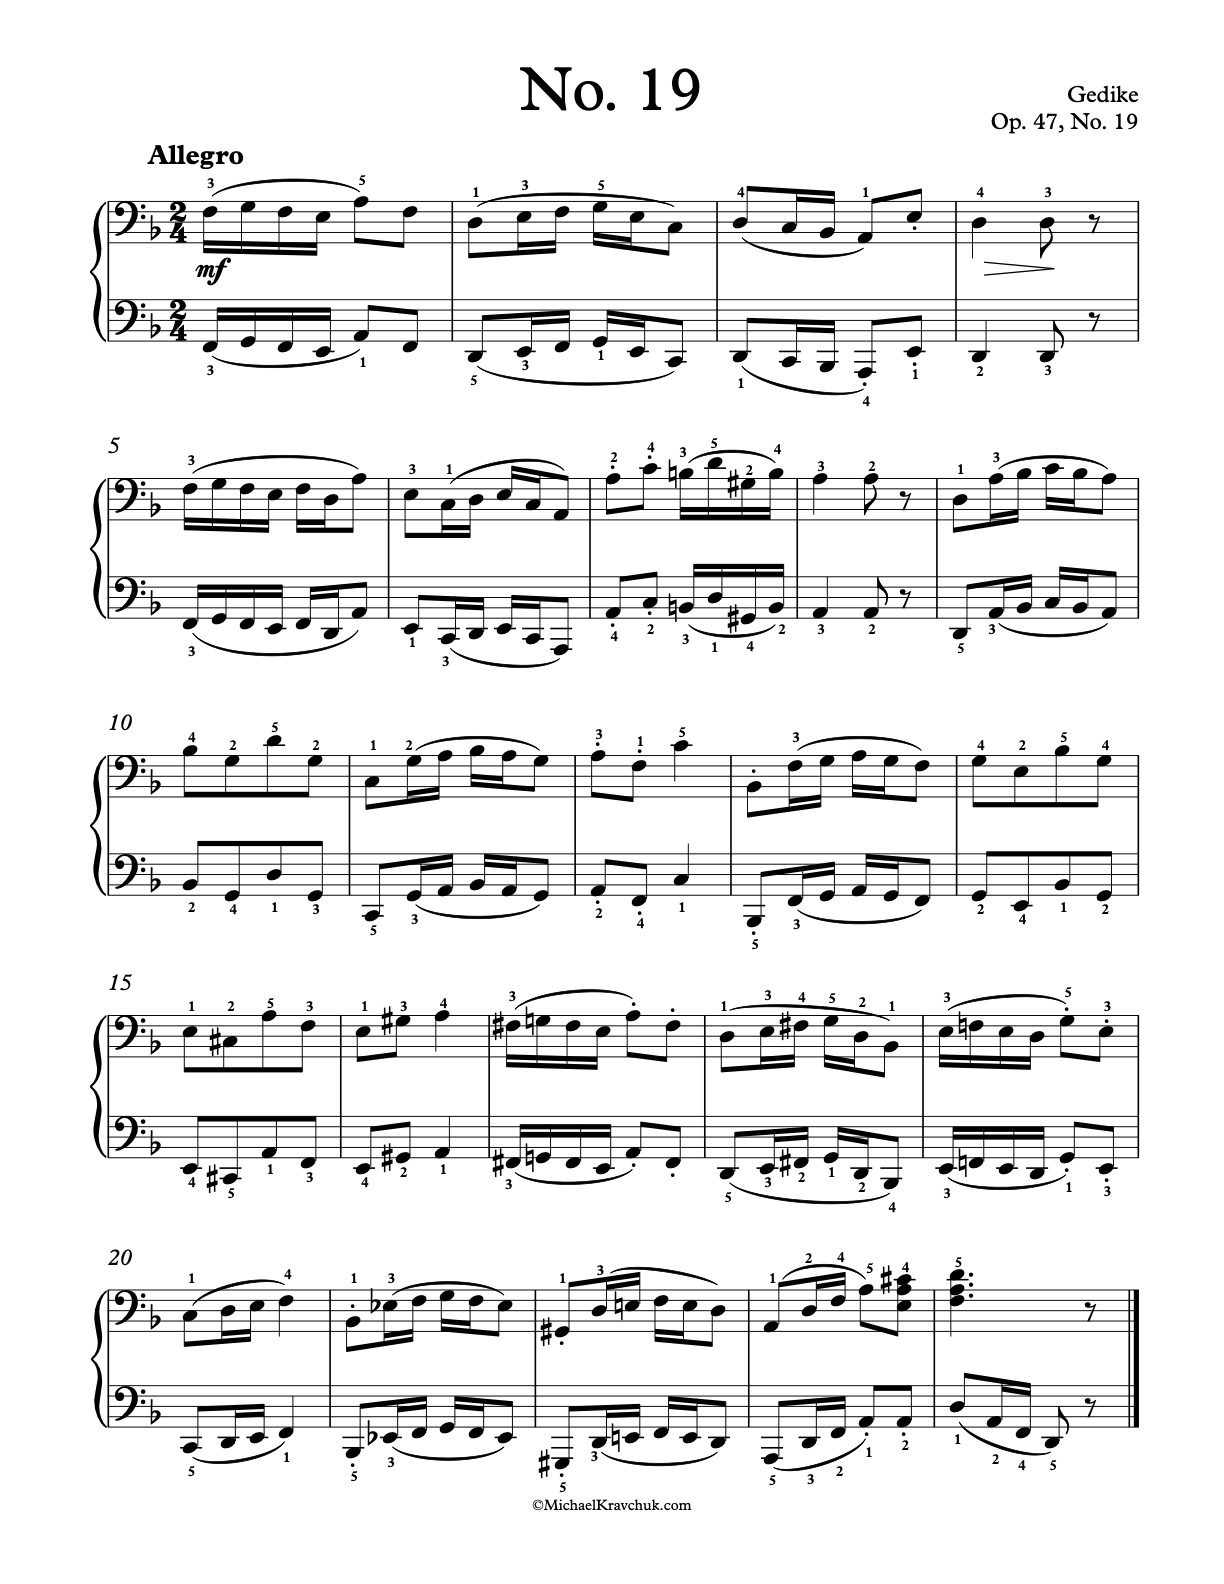 Op. 47, No. 19 Piano Sheet Music